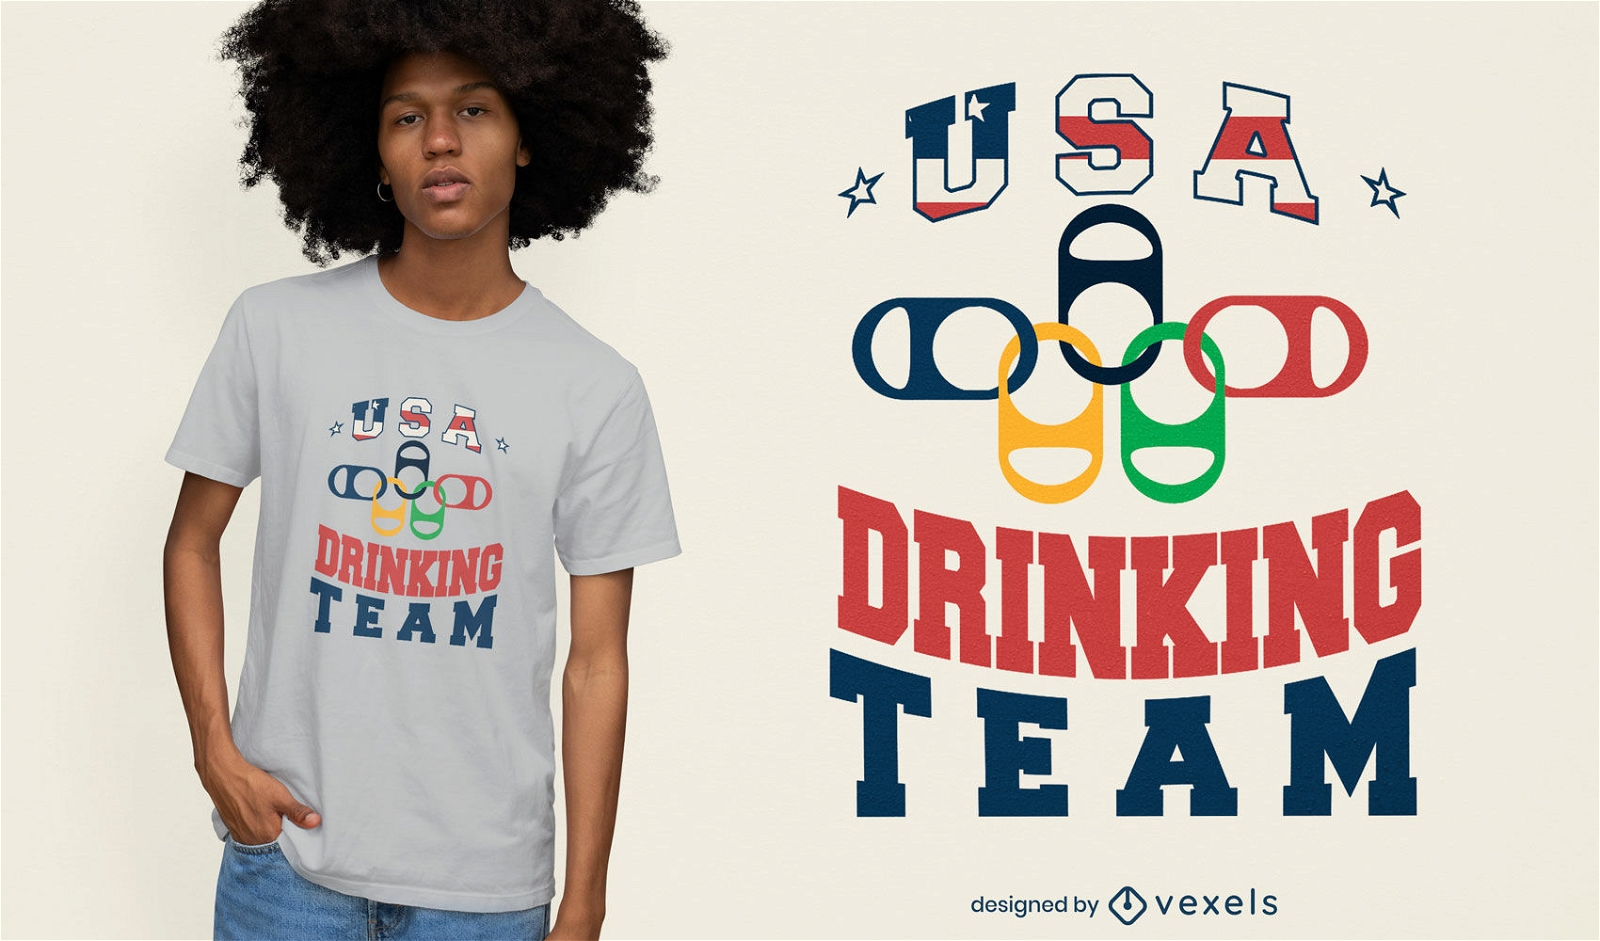 Dise?o de camiseta del equipo de bebida de EE. UU.